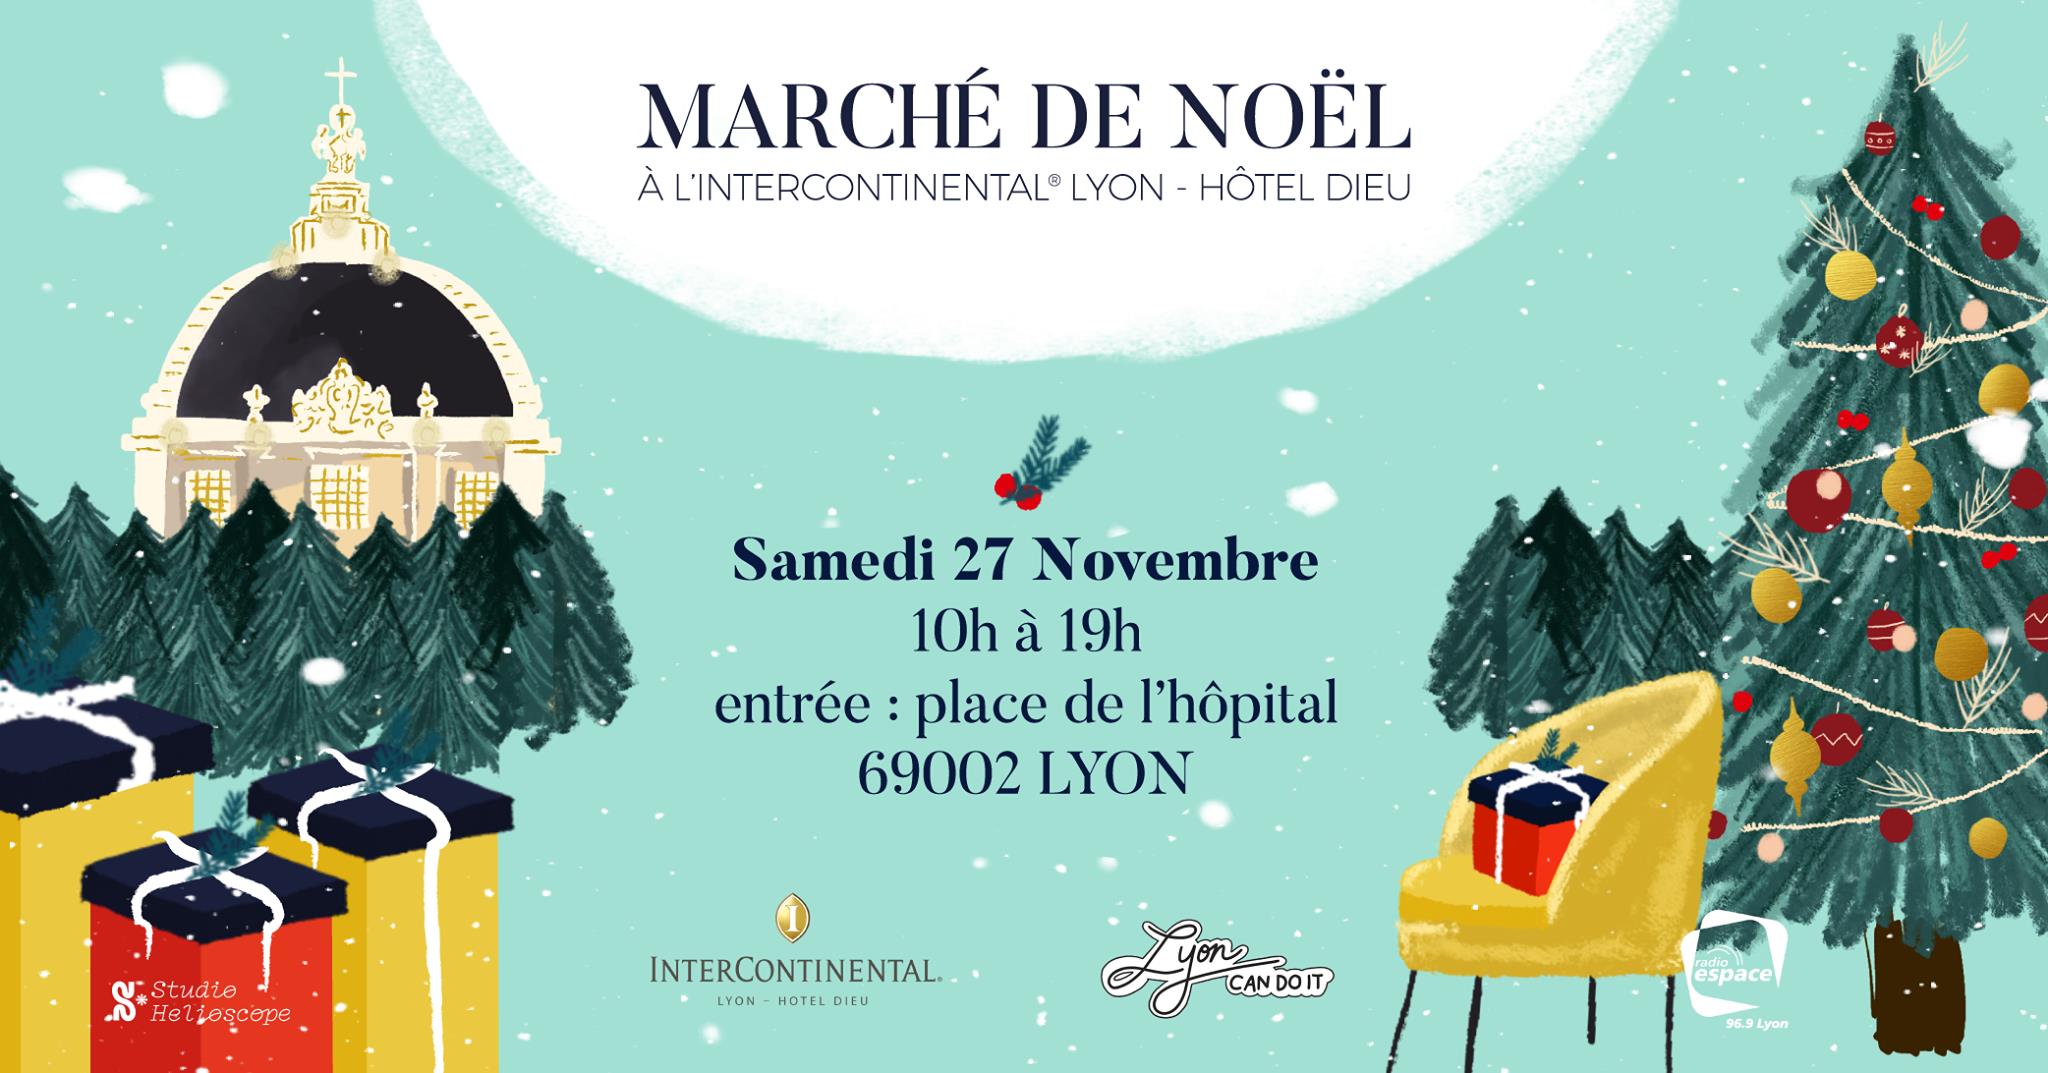 Marché de noël de l’Intercontinental Lyon Grand Hôtel-Dieu samedi 27 novembre 2021